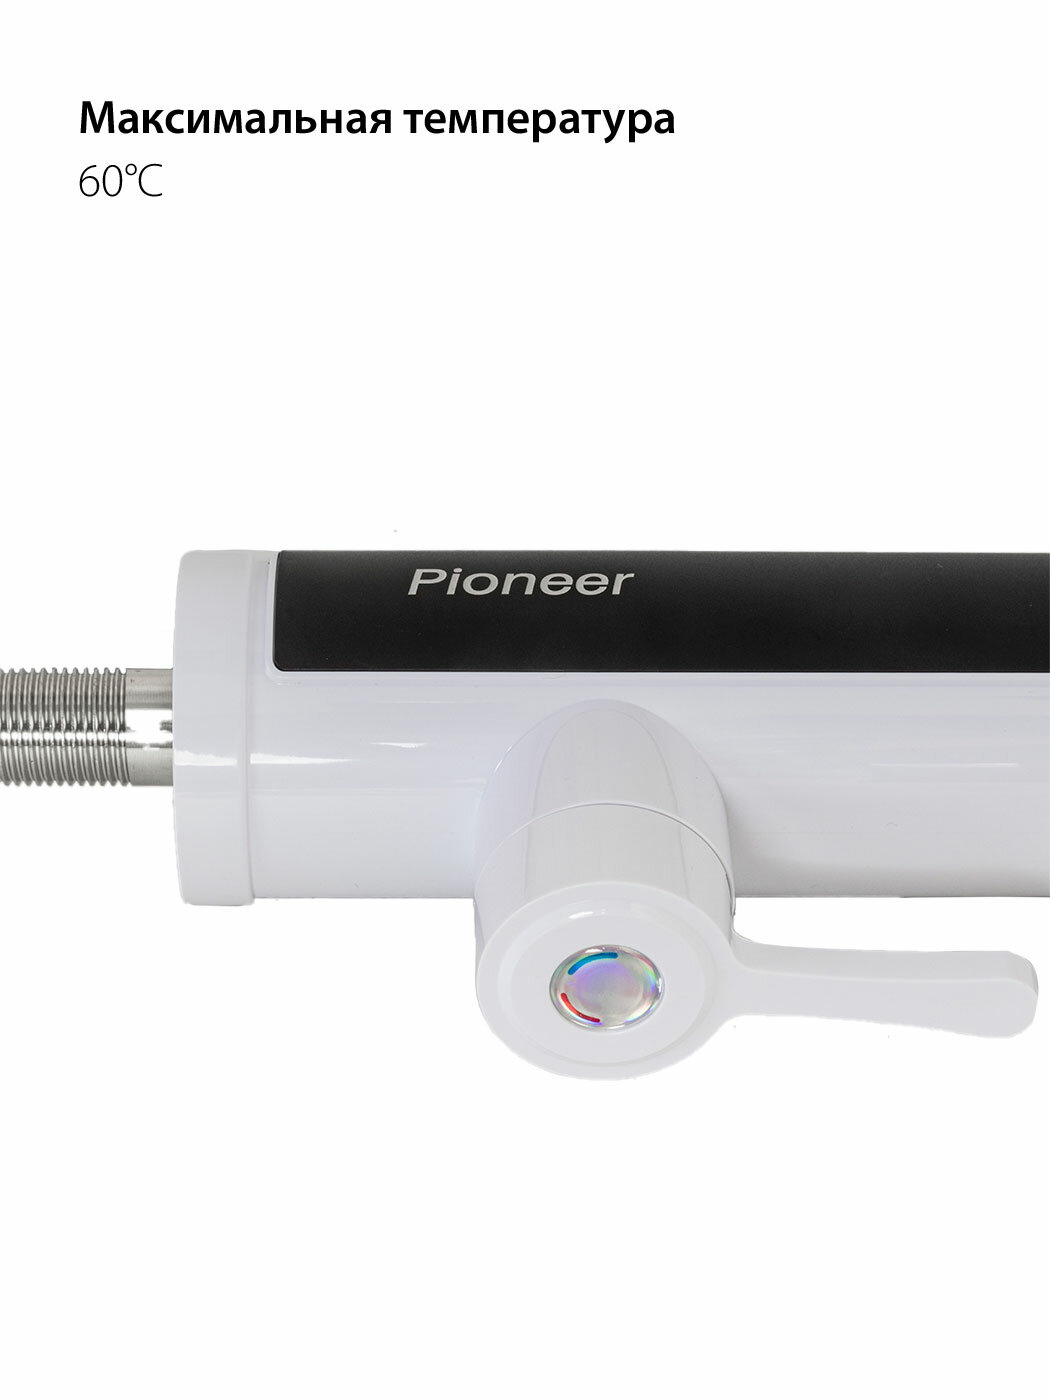 Водонагреватель проточный электрический Pioneer WH660 с цифровым дисплеем и индикацией температуры, мгновенный нагрев от 30 до 60 градусов - фотография № 5